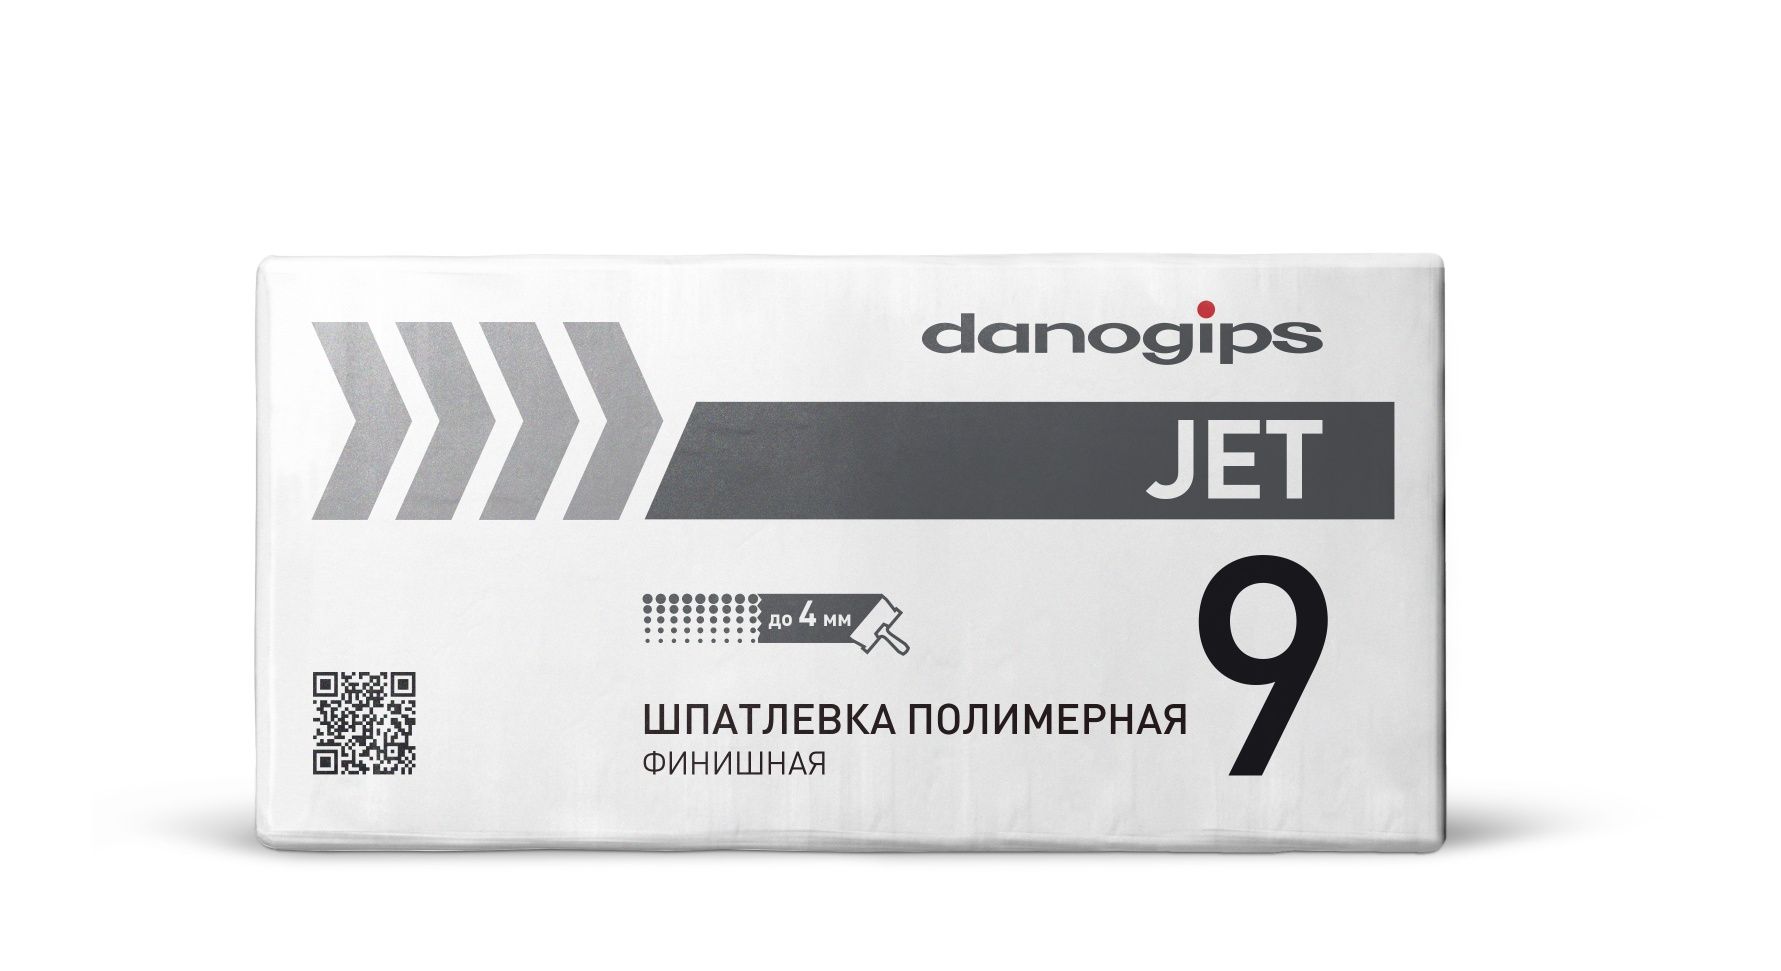 Шпатлевка полимерная Danogips JET 9